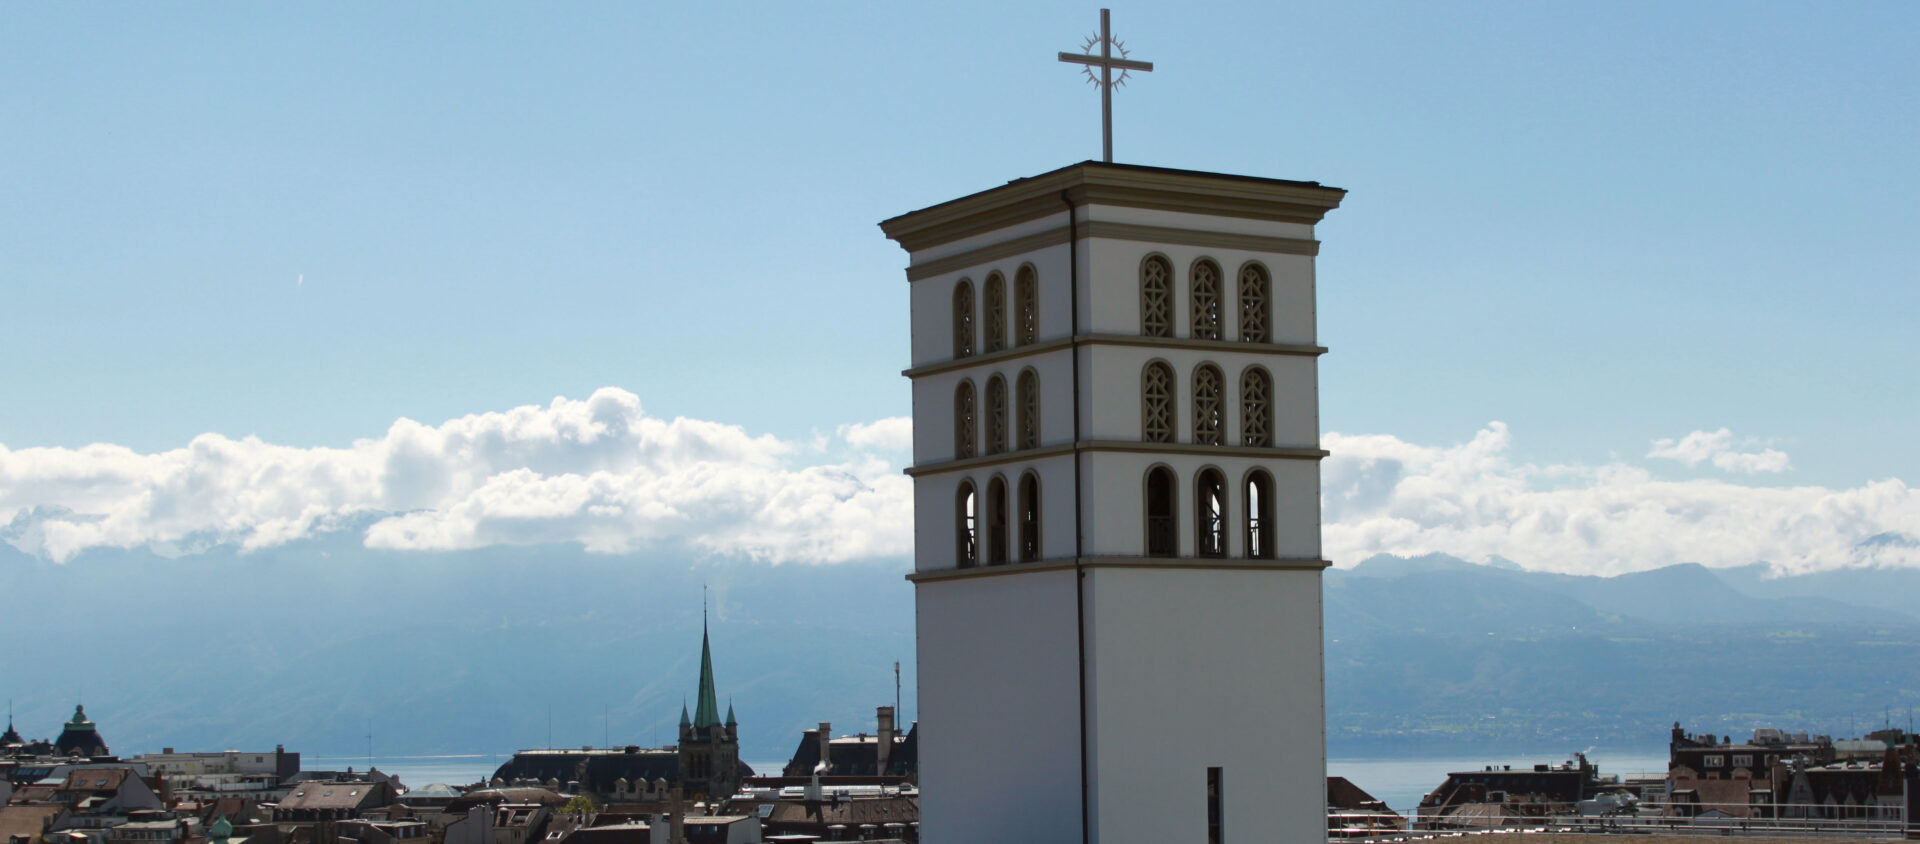 Les Eglises de Suisse invitent leurs paroisses à sonner les cloches des églises en mémoire des victimes du covid-19 en Suisse | © Bernard Litzler